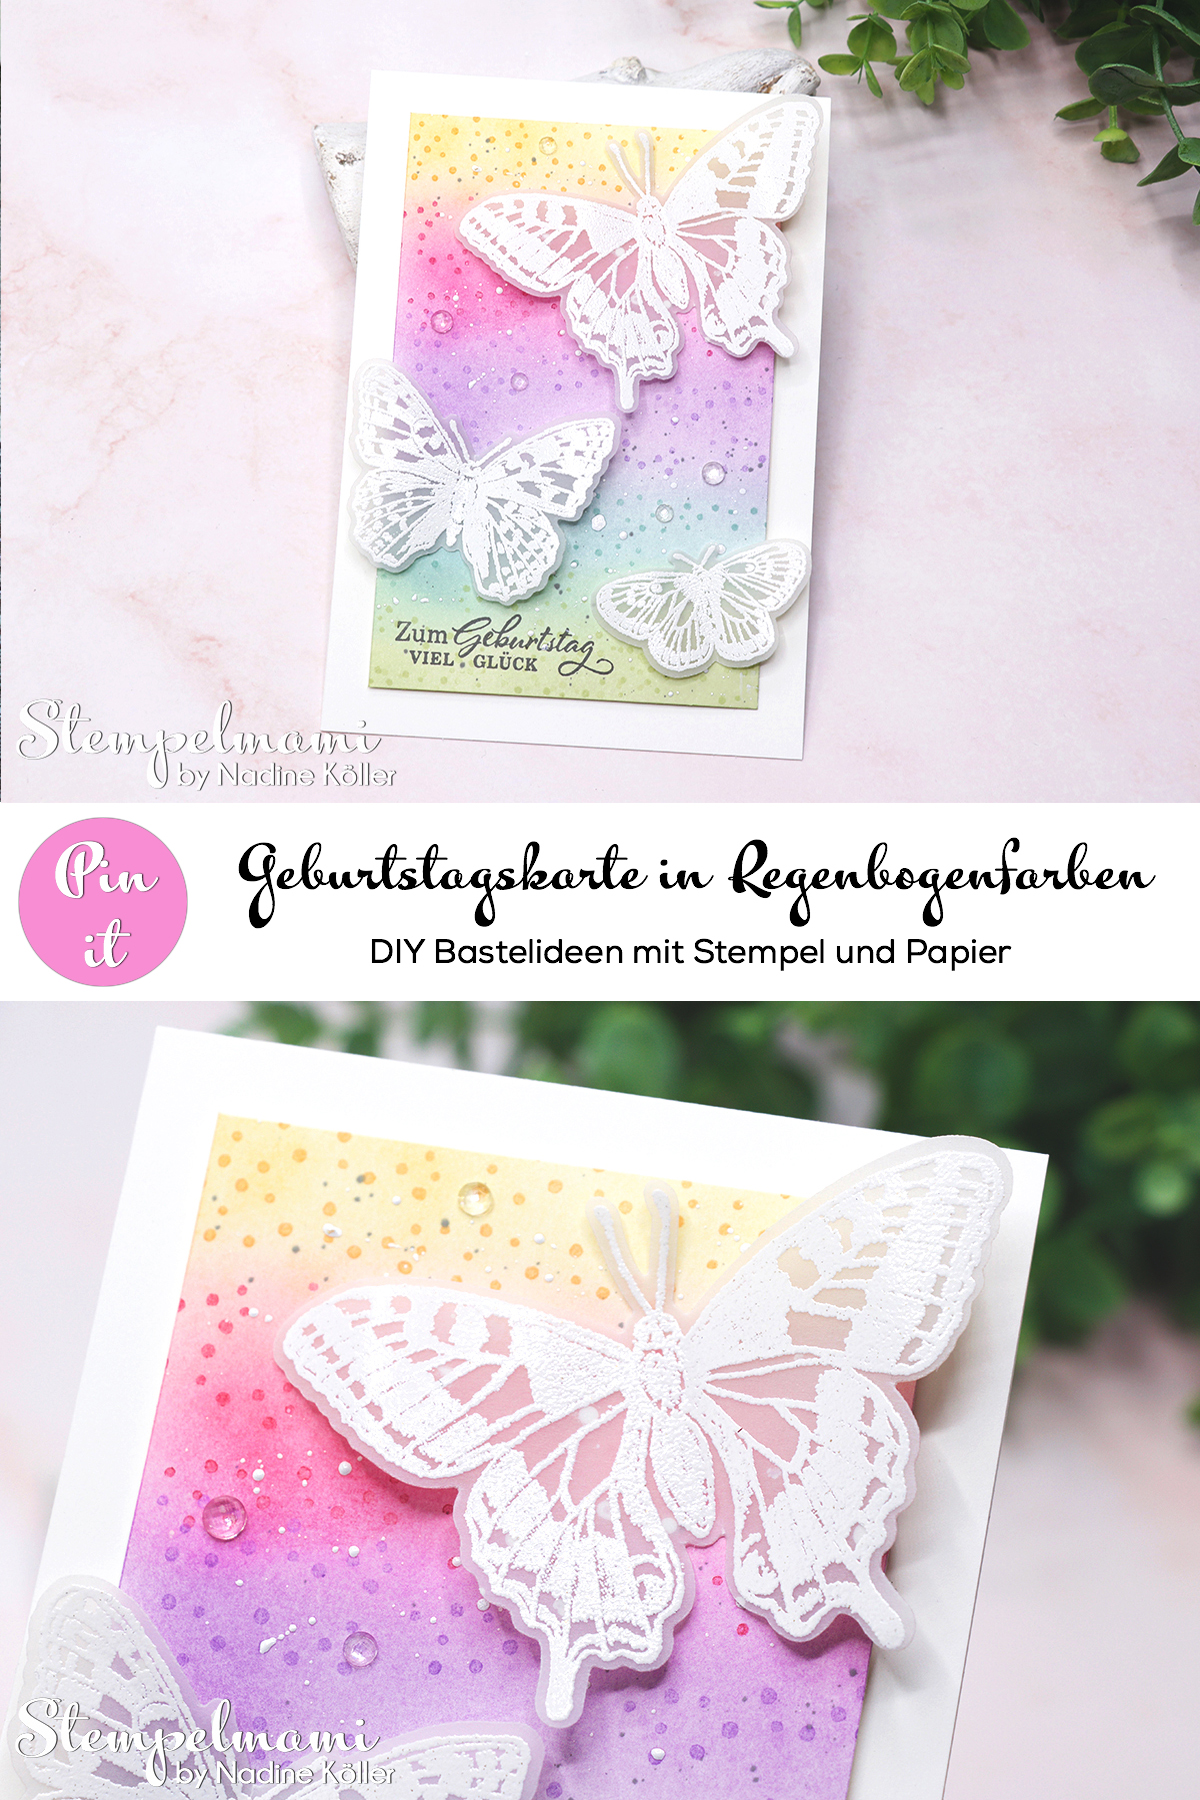 Stampin Up Geburtstagskarte in Regenbogenfarben Fluegel voller Fantasie Stempelmami Pinterest 3